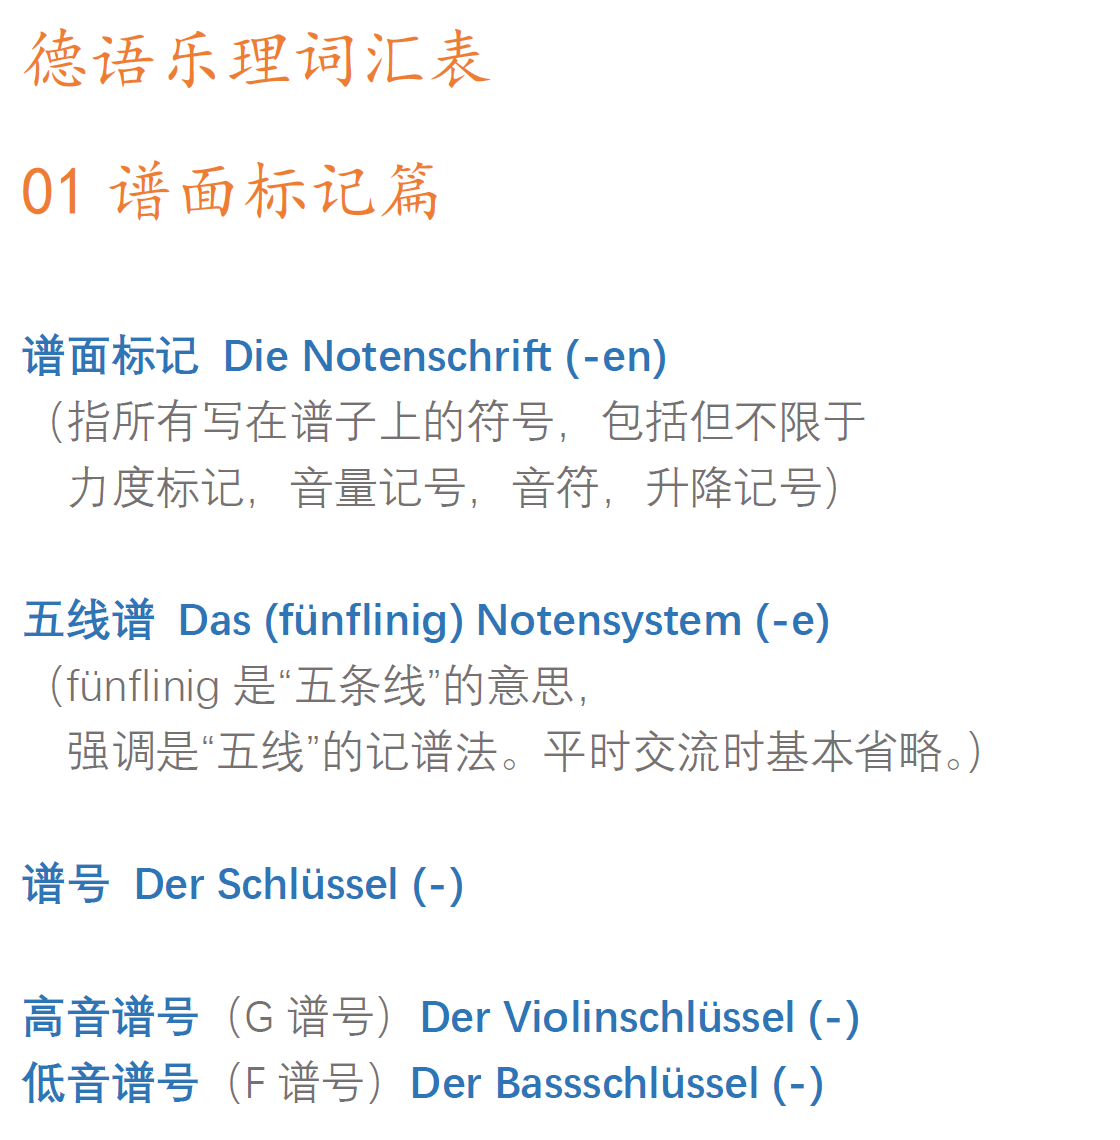 本列表仅收集汇总各乐理词对应的德语翻译,不涉及乐理教学,供有一定